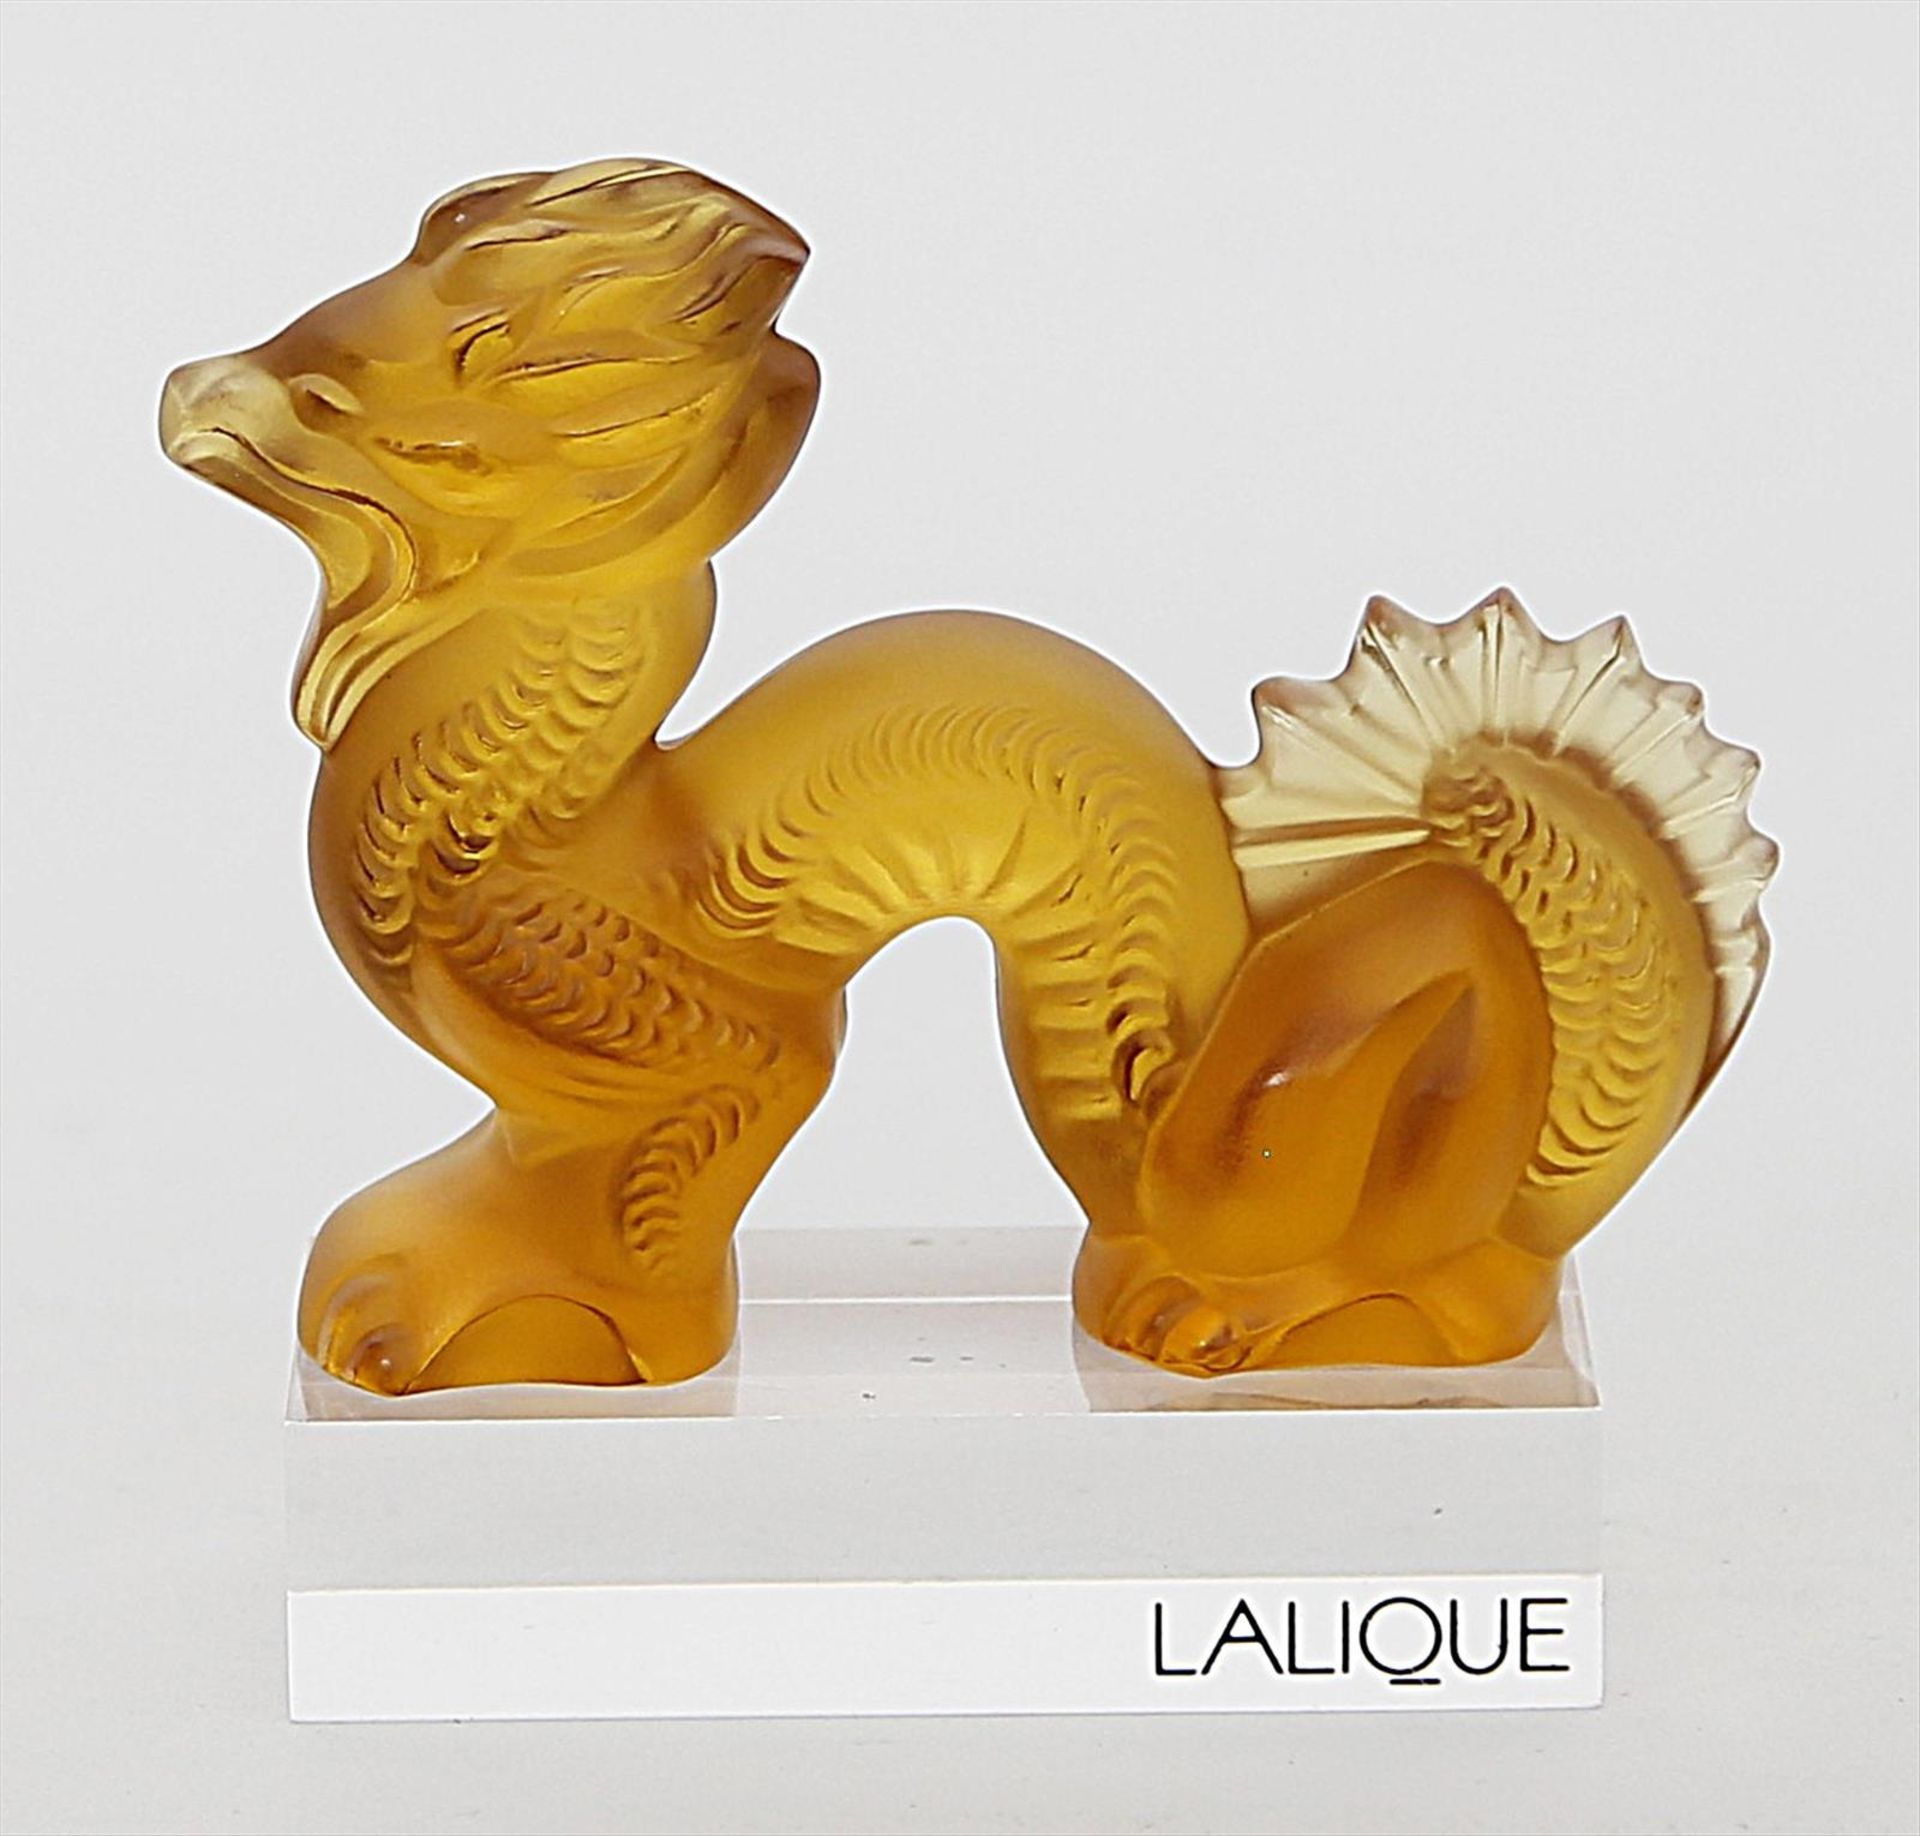 Drachenskulptur, Lalique.Bernsteinfarbenes, matt geätztes Kristall. Auf Unterseite